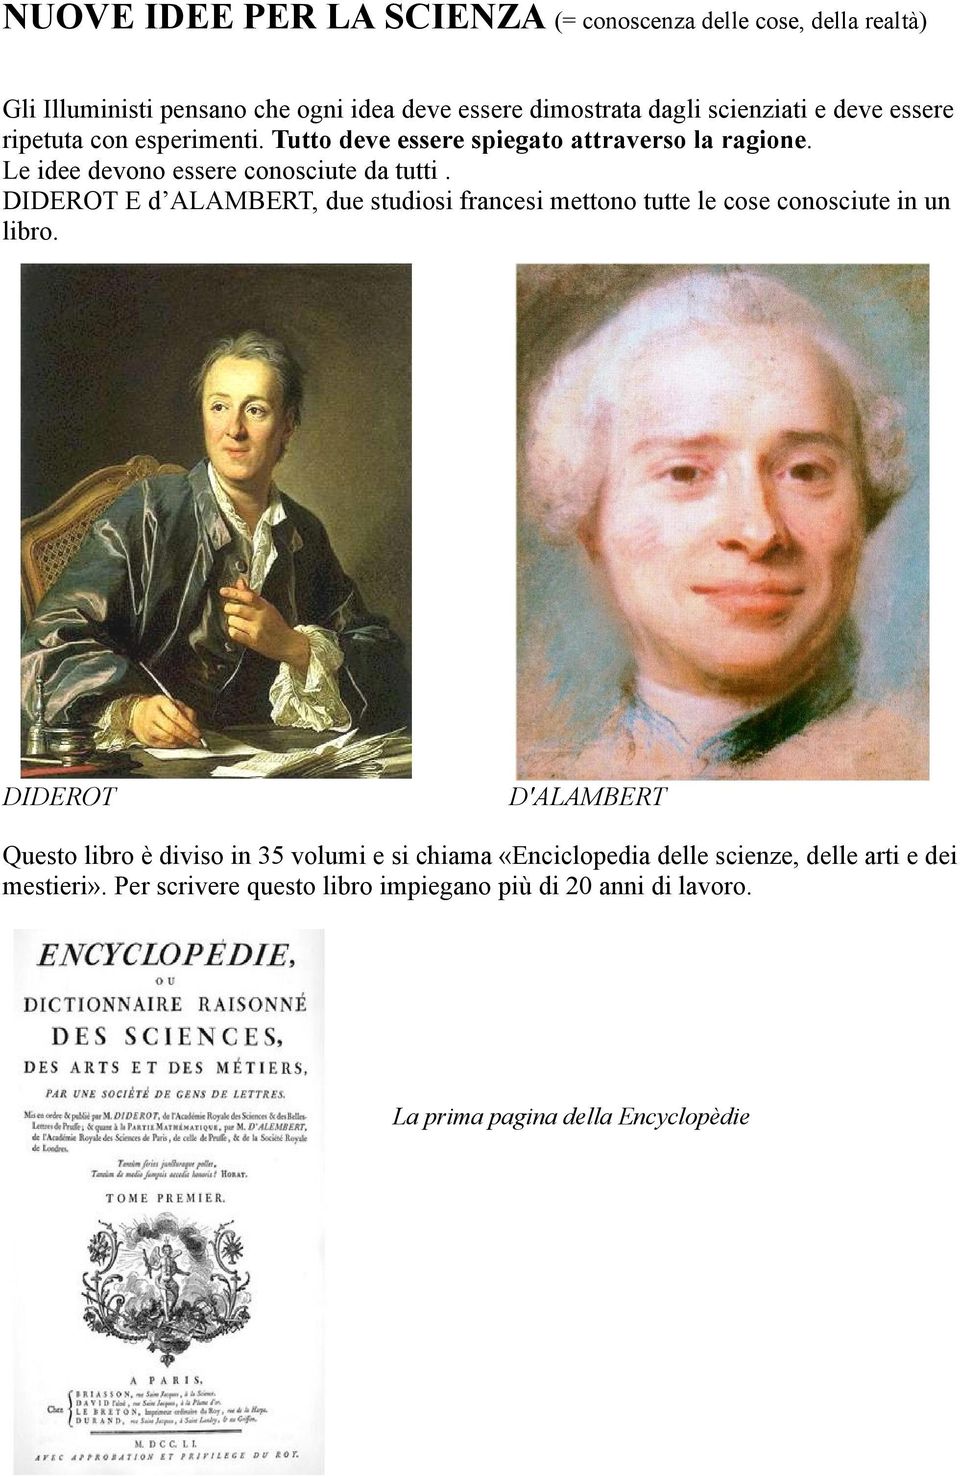 DIDEROT E d ALAMBERT, due studiosi francesi mettono tutte le cose conosciute in un libro.